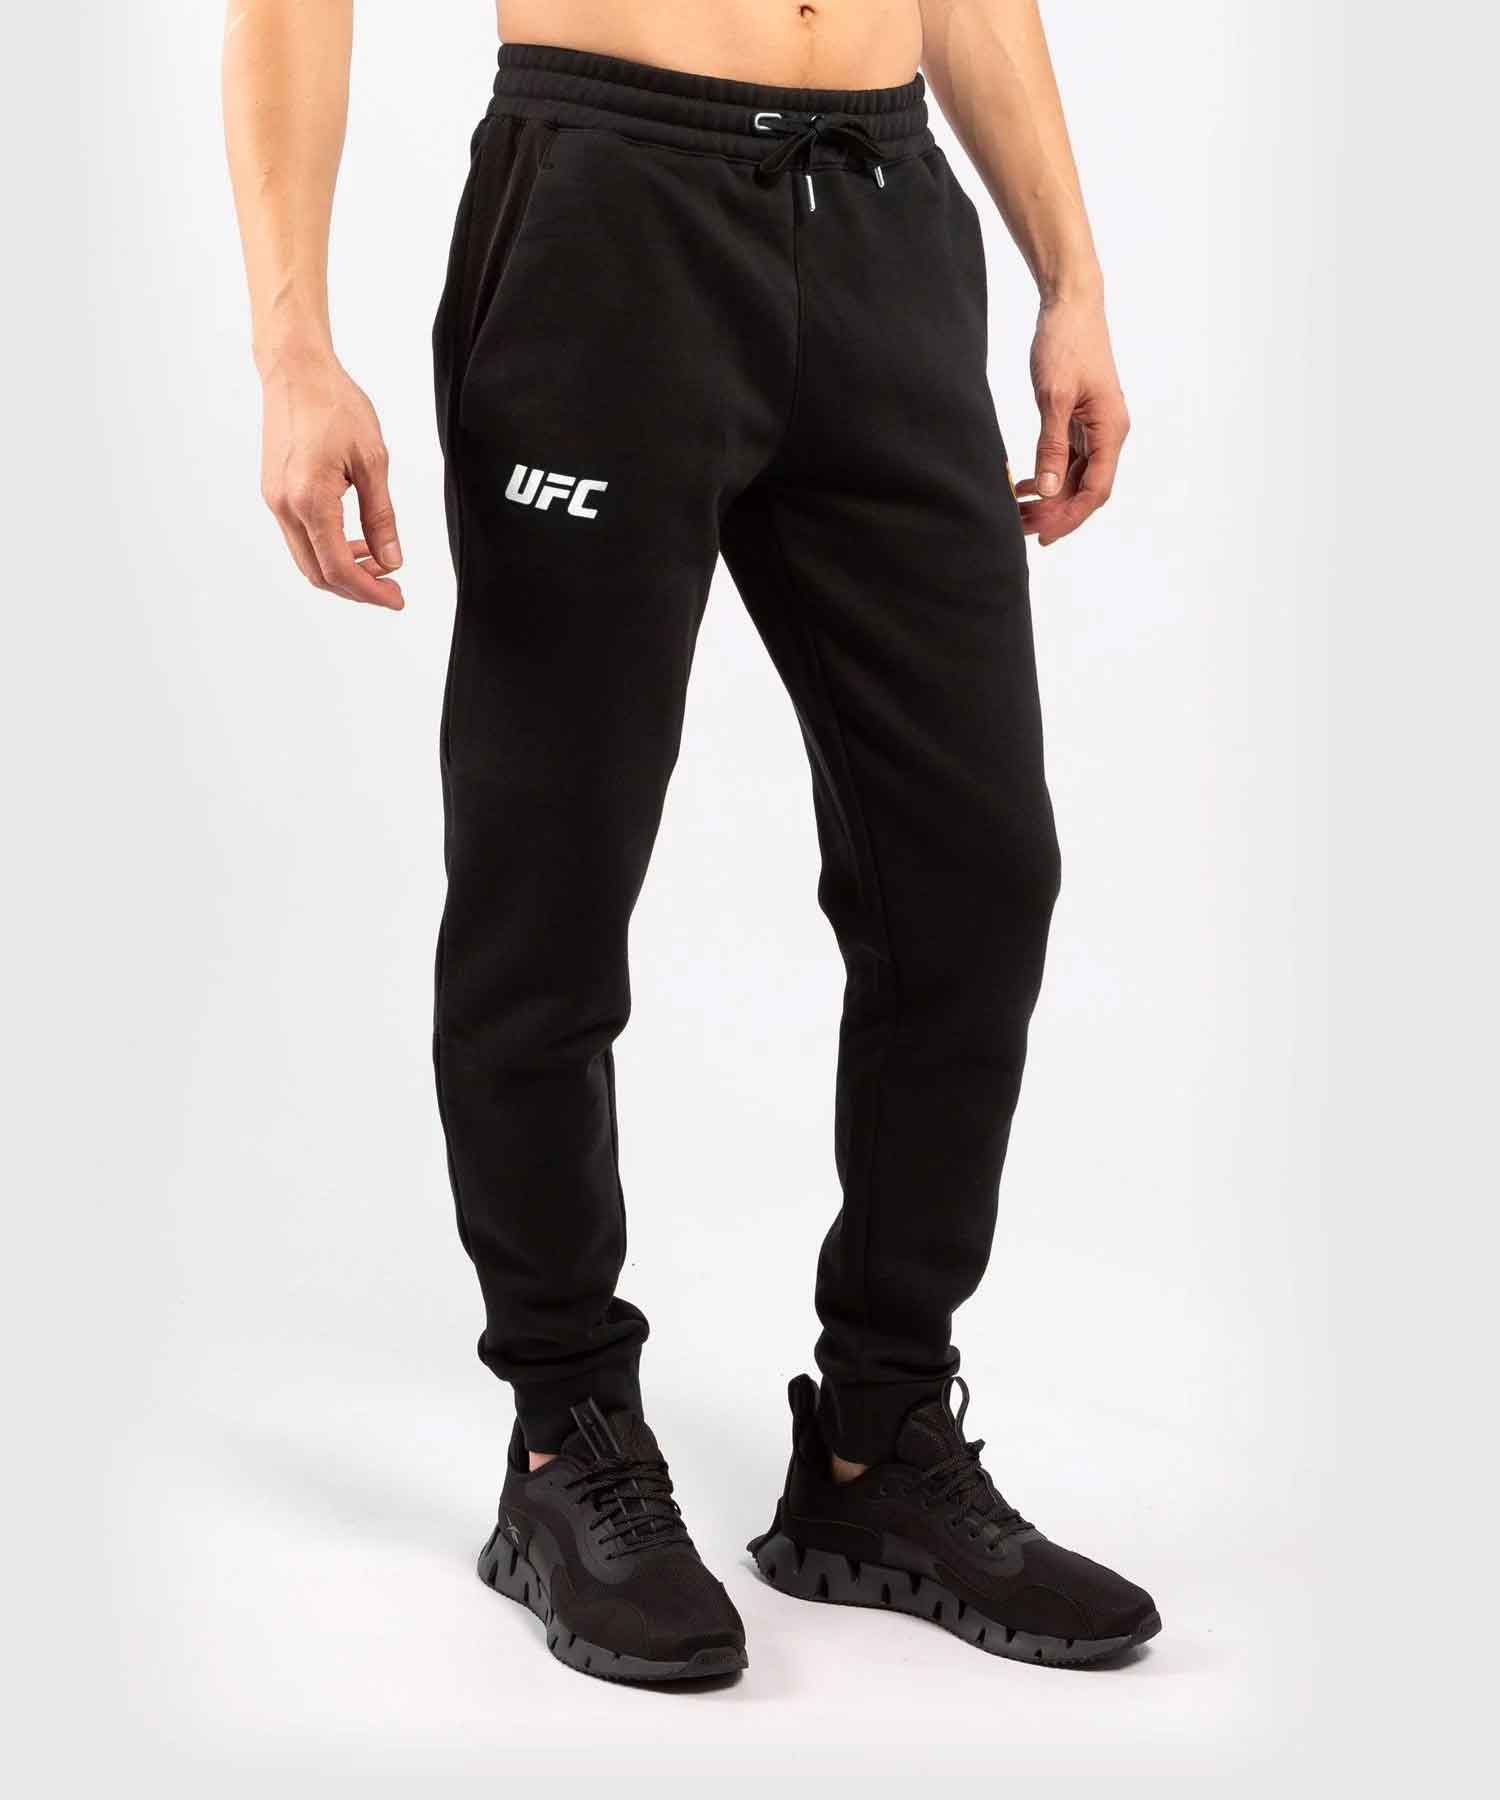 VENUM／ヴェナム　スウェットパンツ　　UFC VENUM REPLICA MEN'S PANTS／UFC VENUM レプリカ メンズ パンツ（黒）